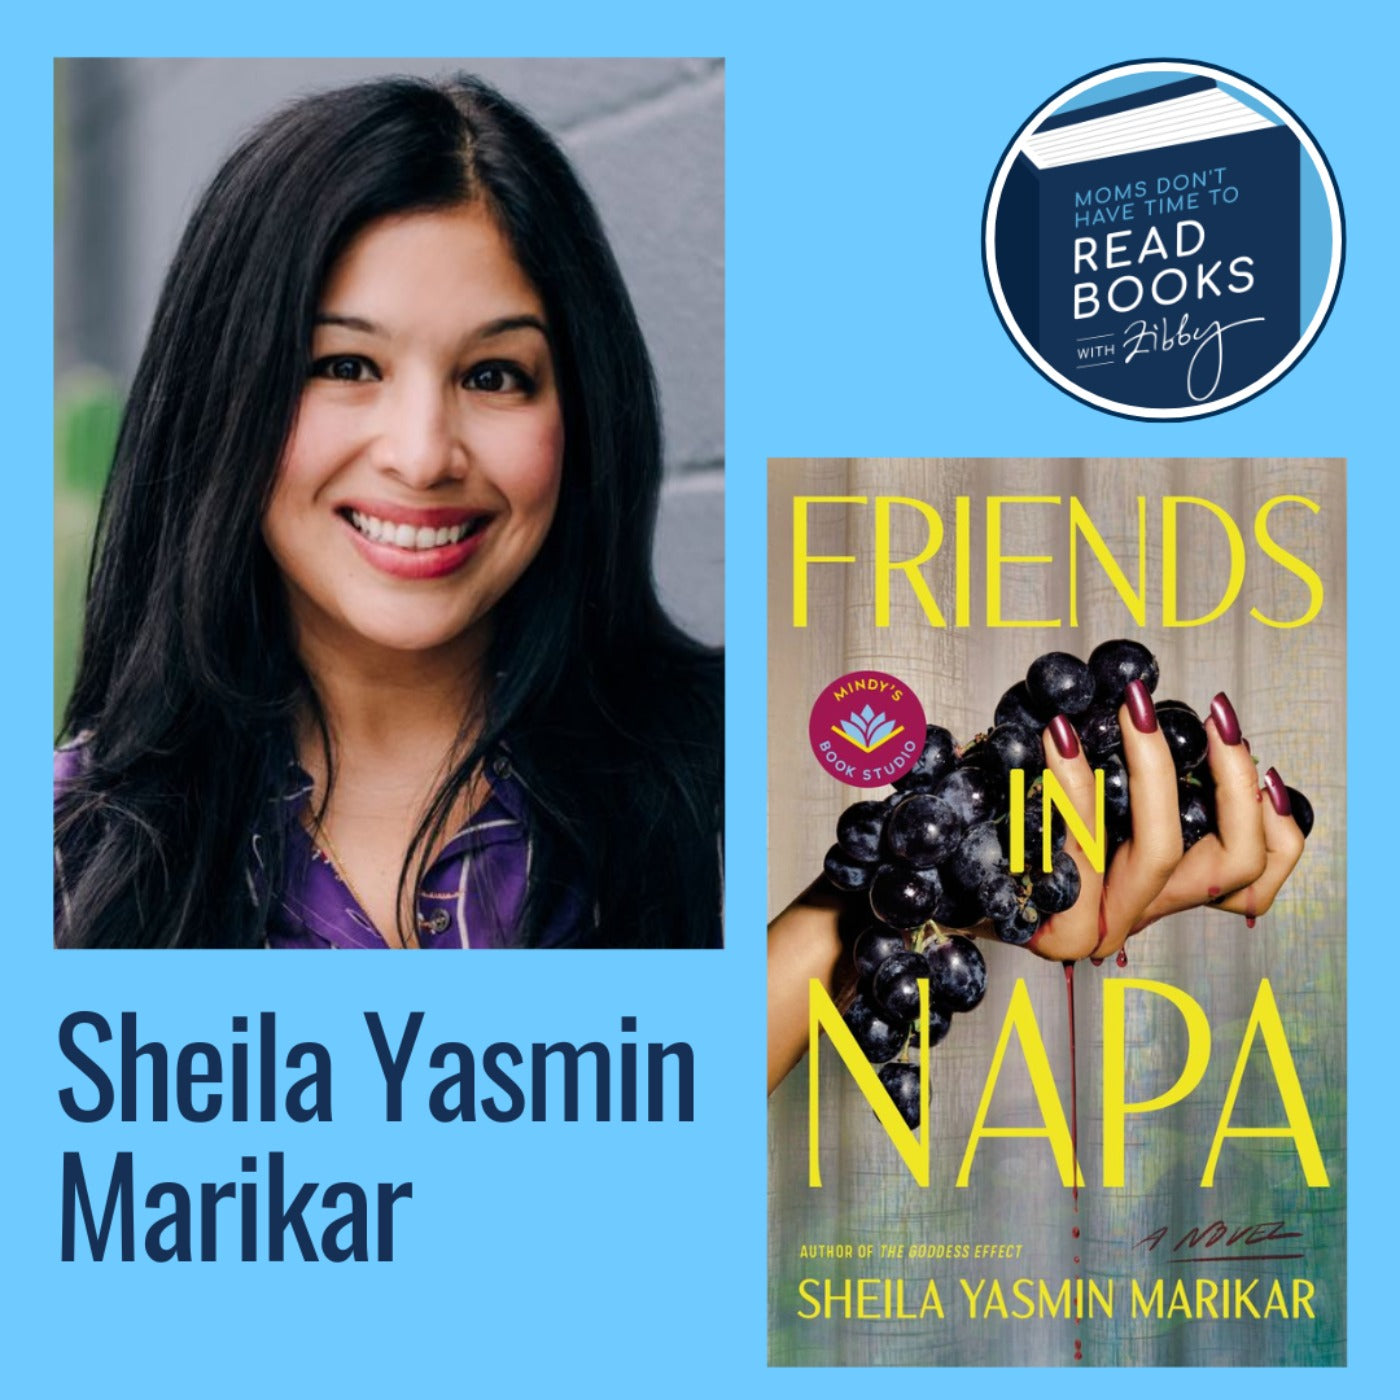 Sheila Yasmin Marikar, FRIENDS IN NAPA